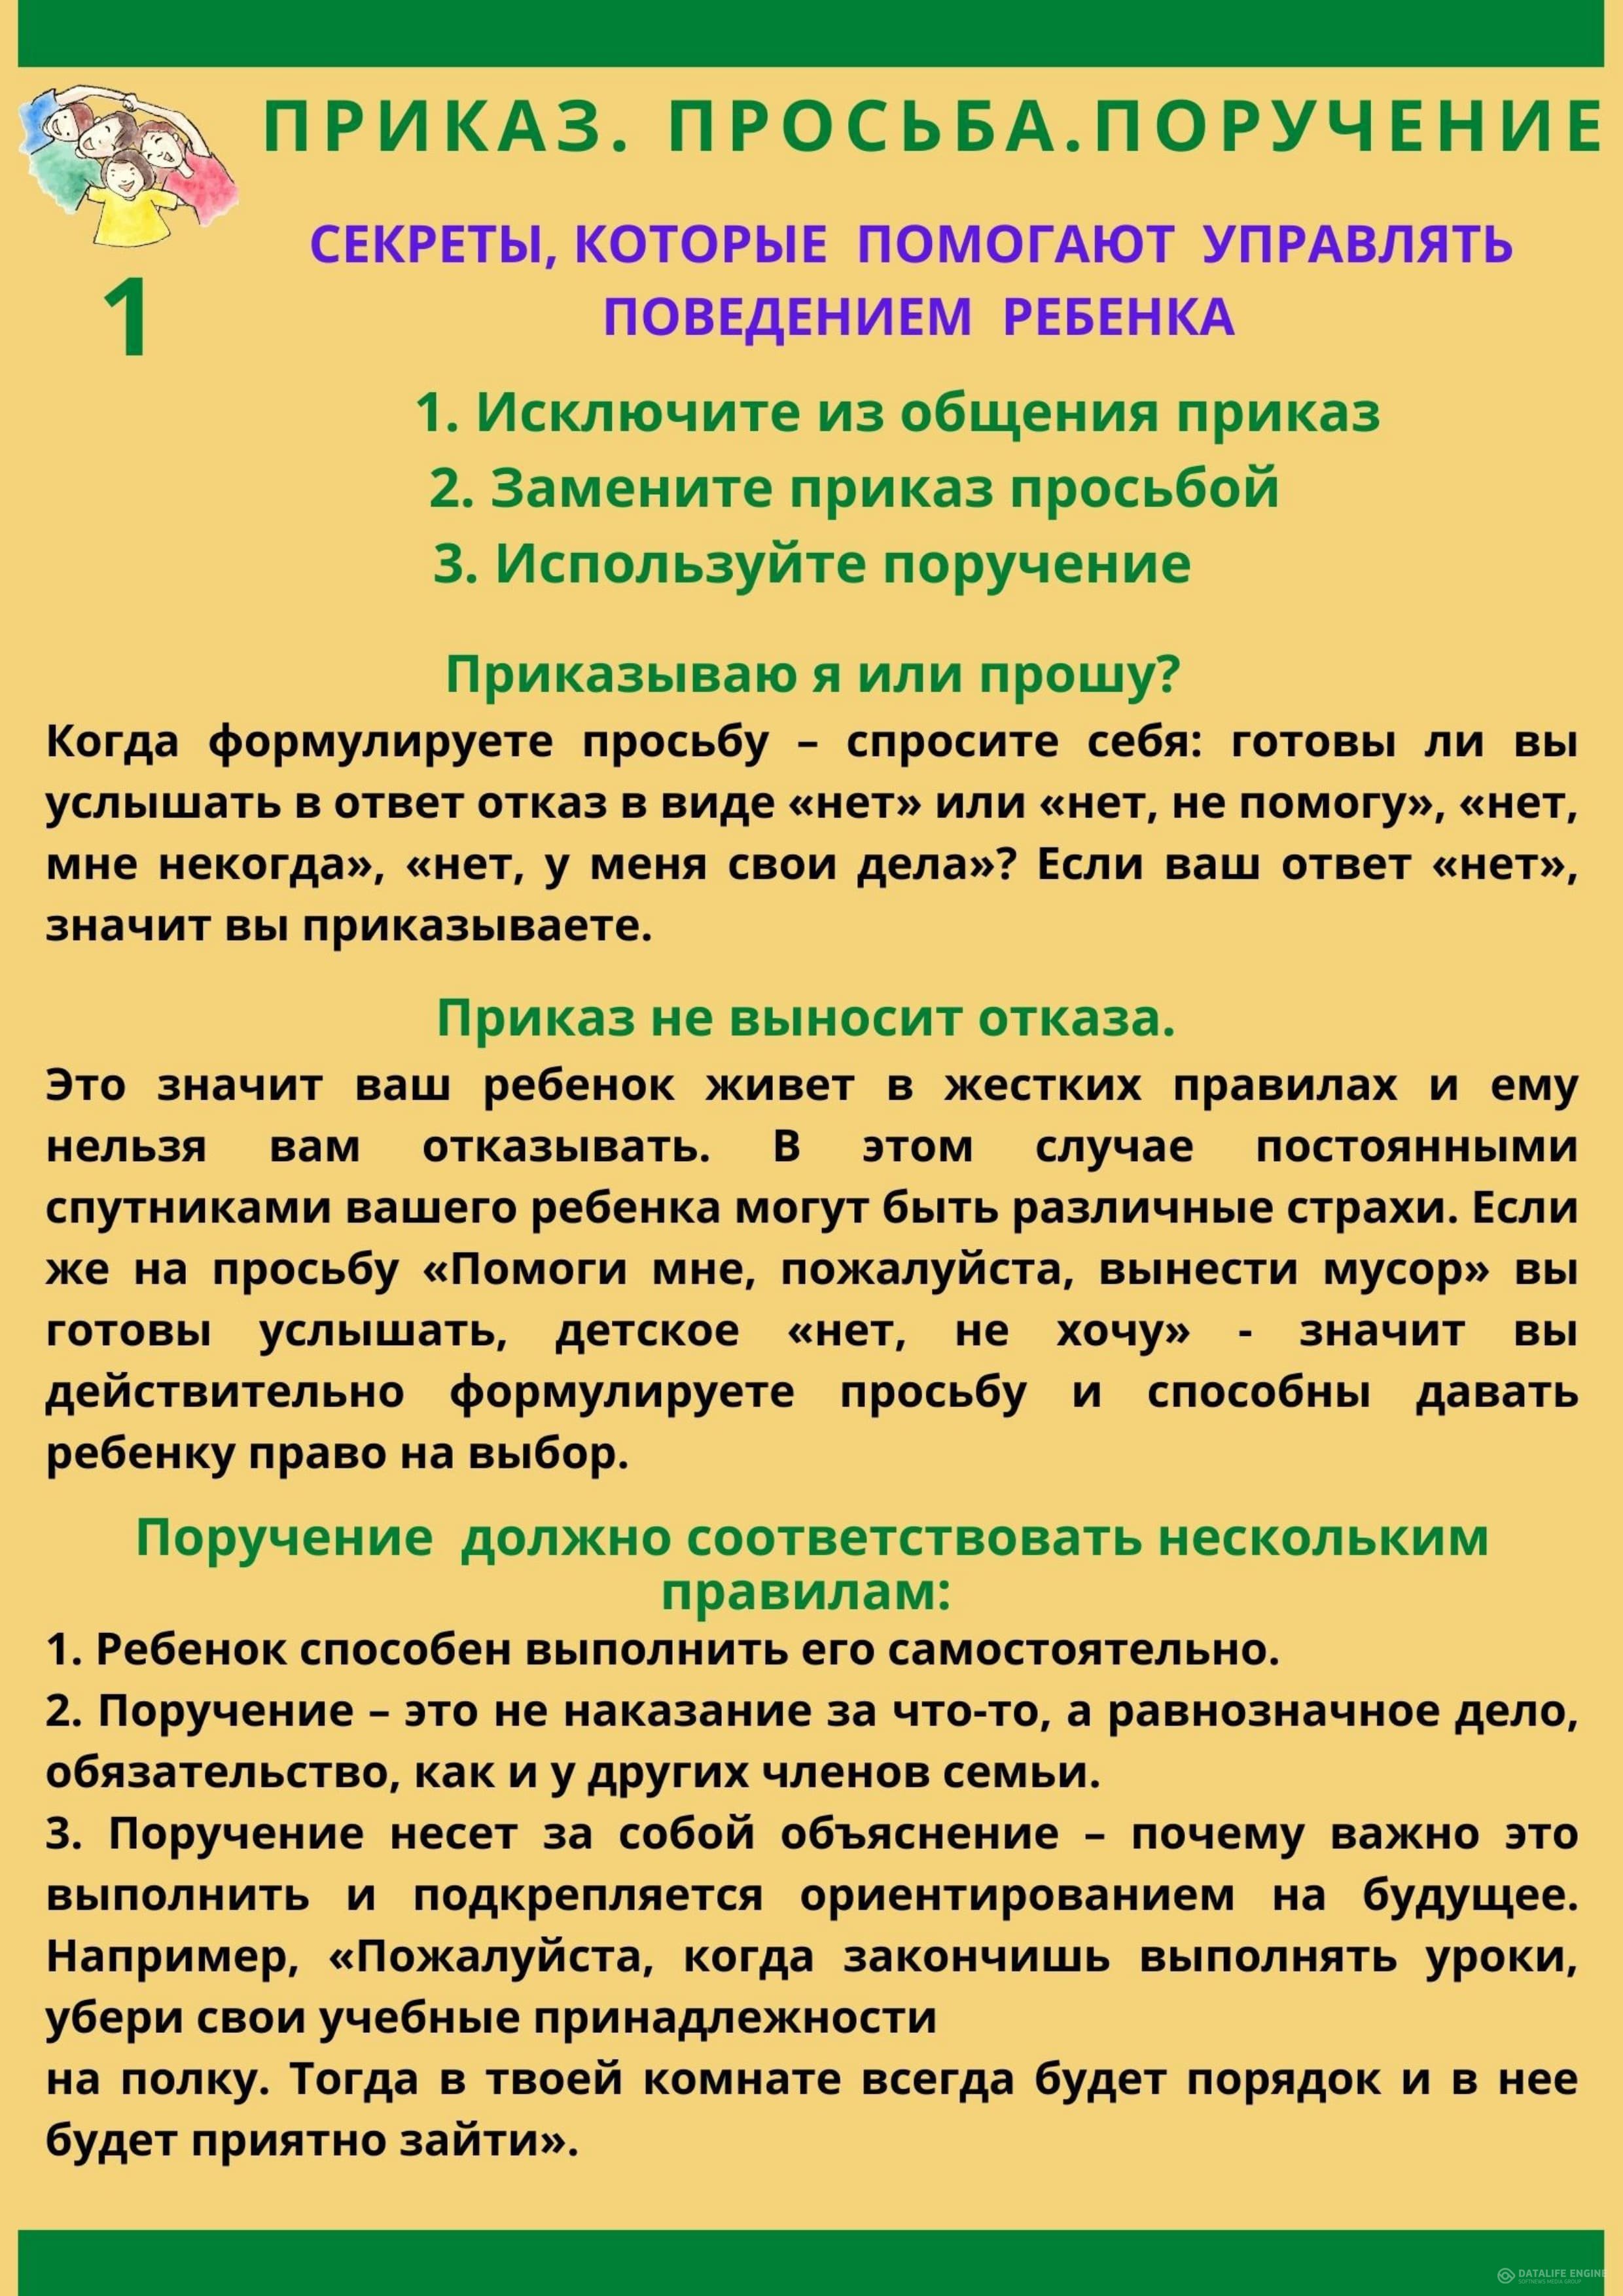 http://www.pmk-kolledg.edu.kz/kaz/uploads/1-pamyatka-dlya-roditeley_page-0001.jpg